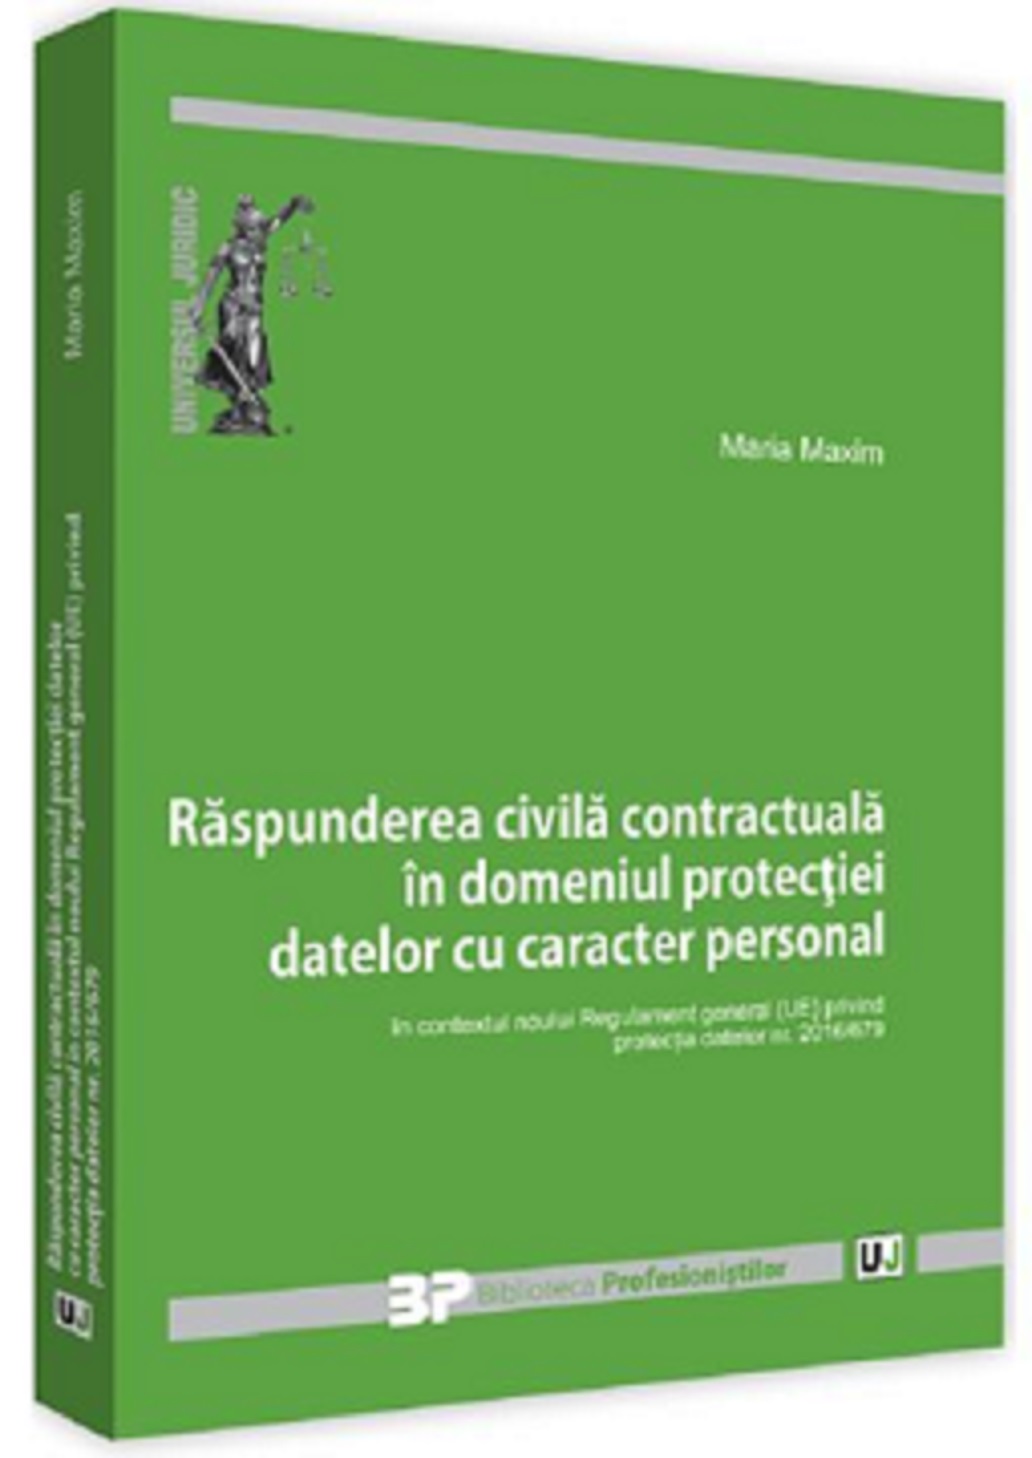 Raspunderea civila contractuala in domeniul protectiei datelor cu caracter personal